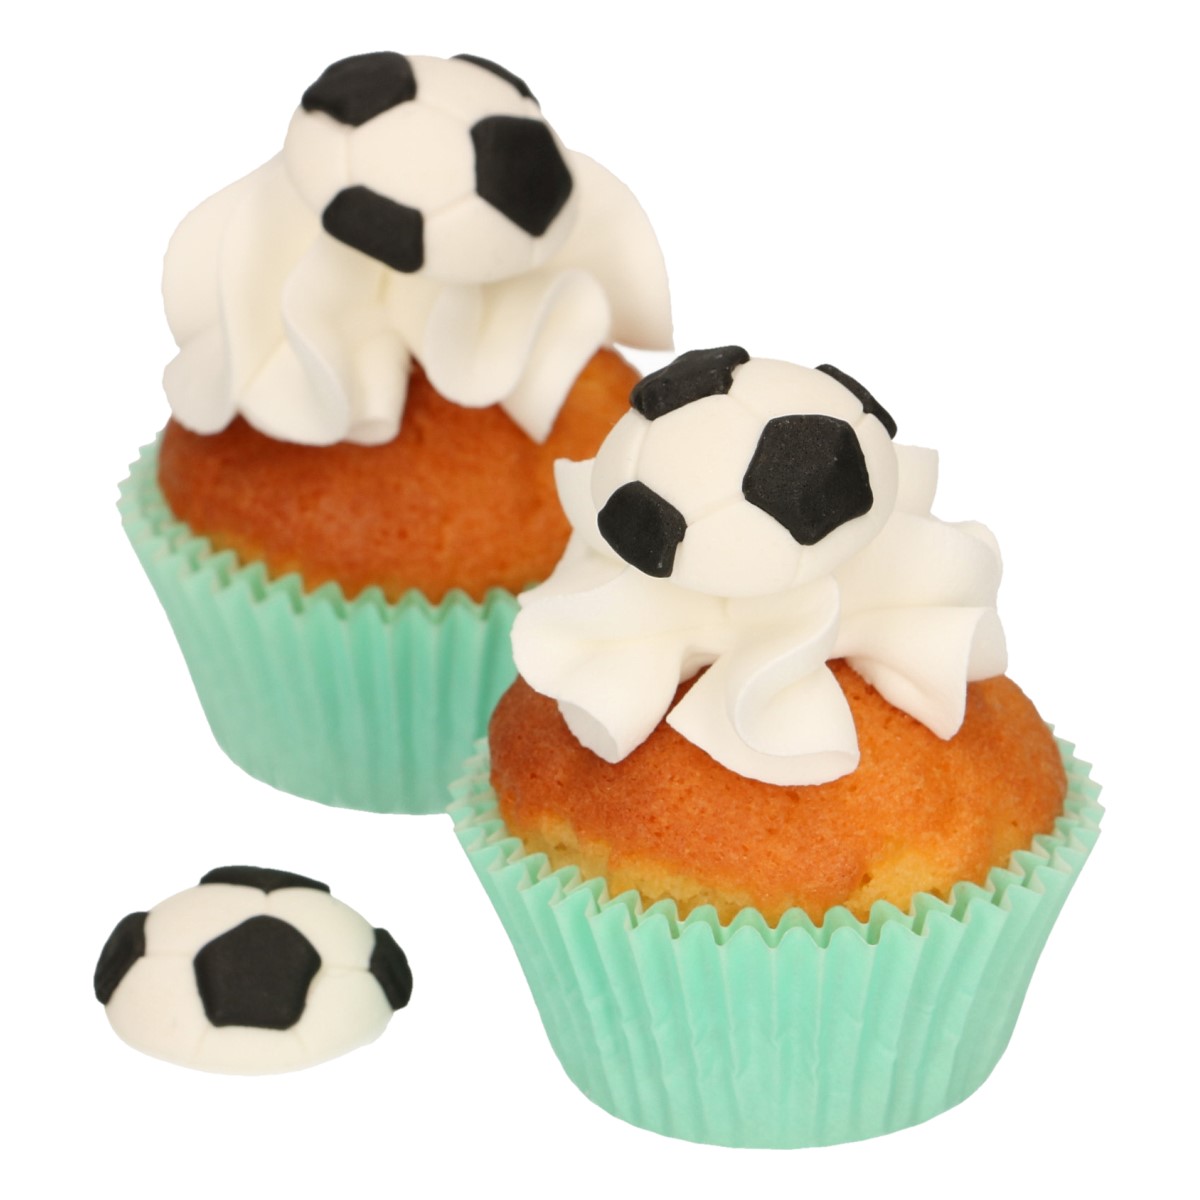 Balones de fútbol de azúcar, 8unidades, marca Funcakes.